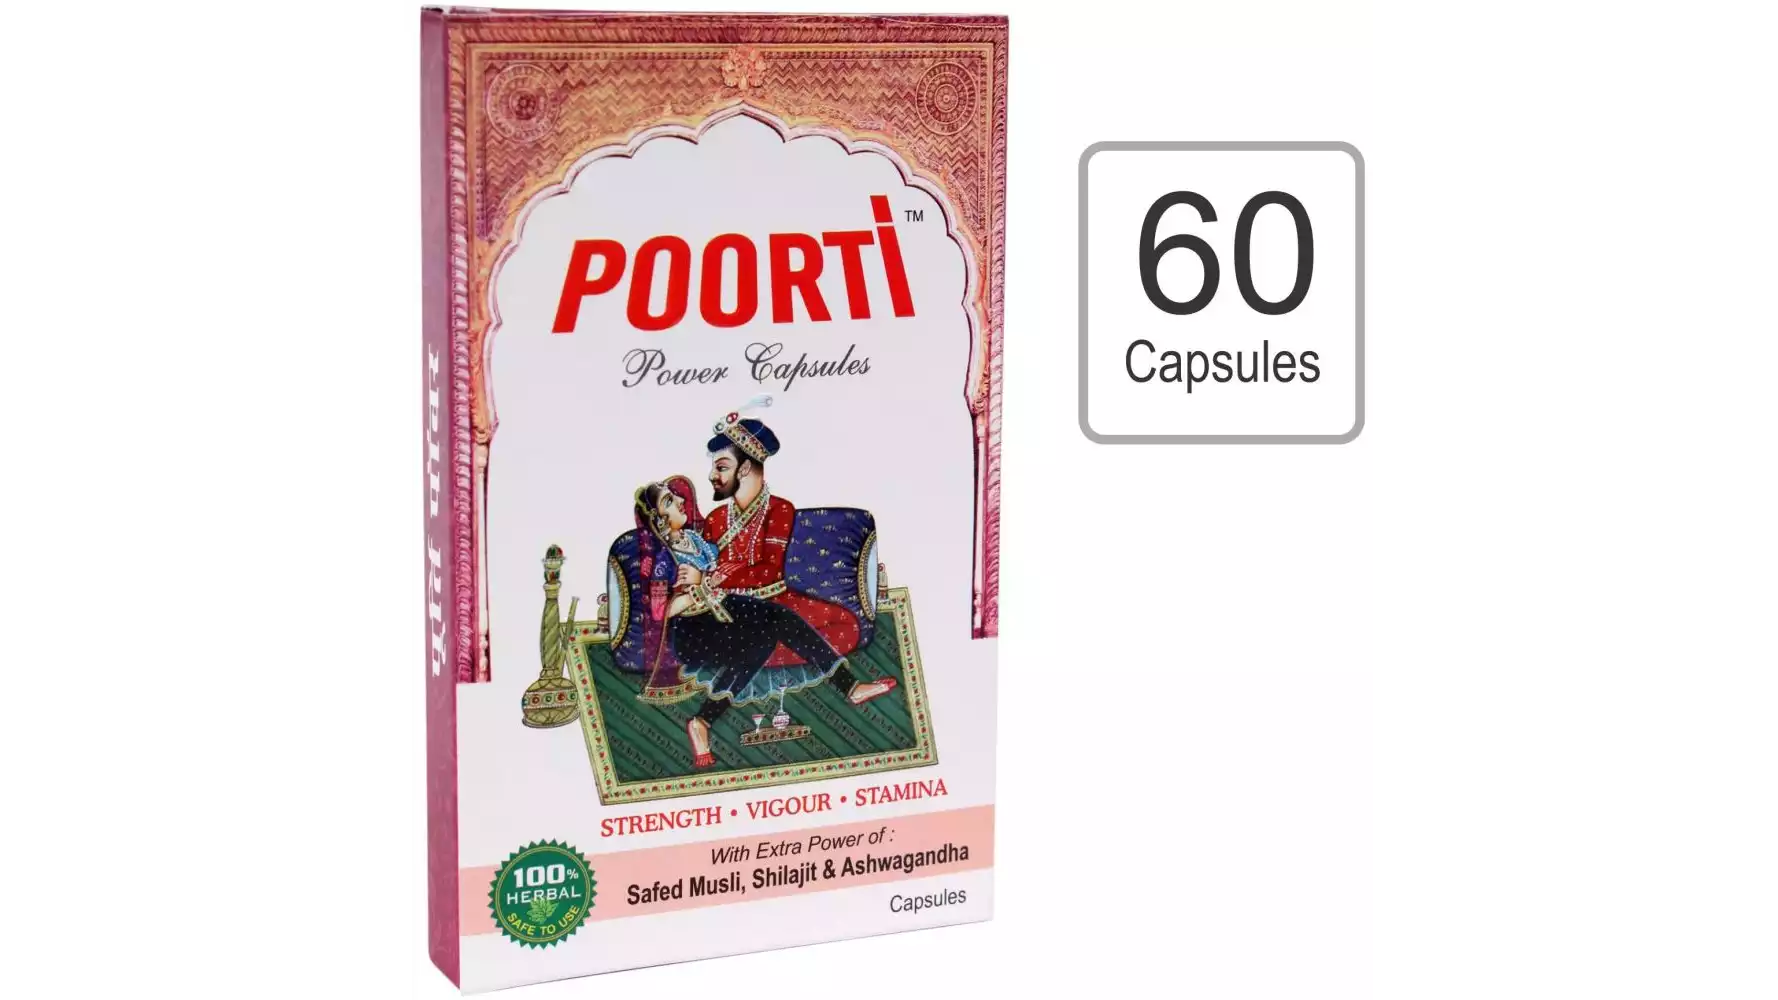 Poorti Power Capsules For Men (60caps)